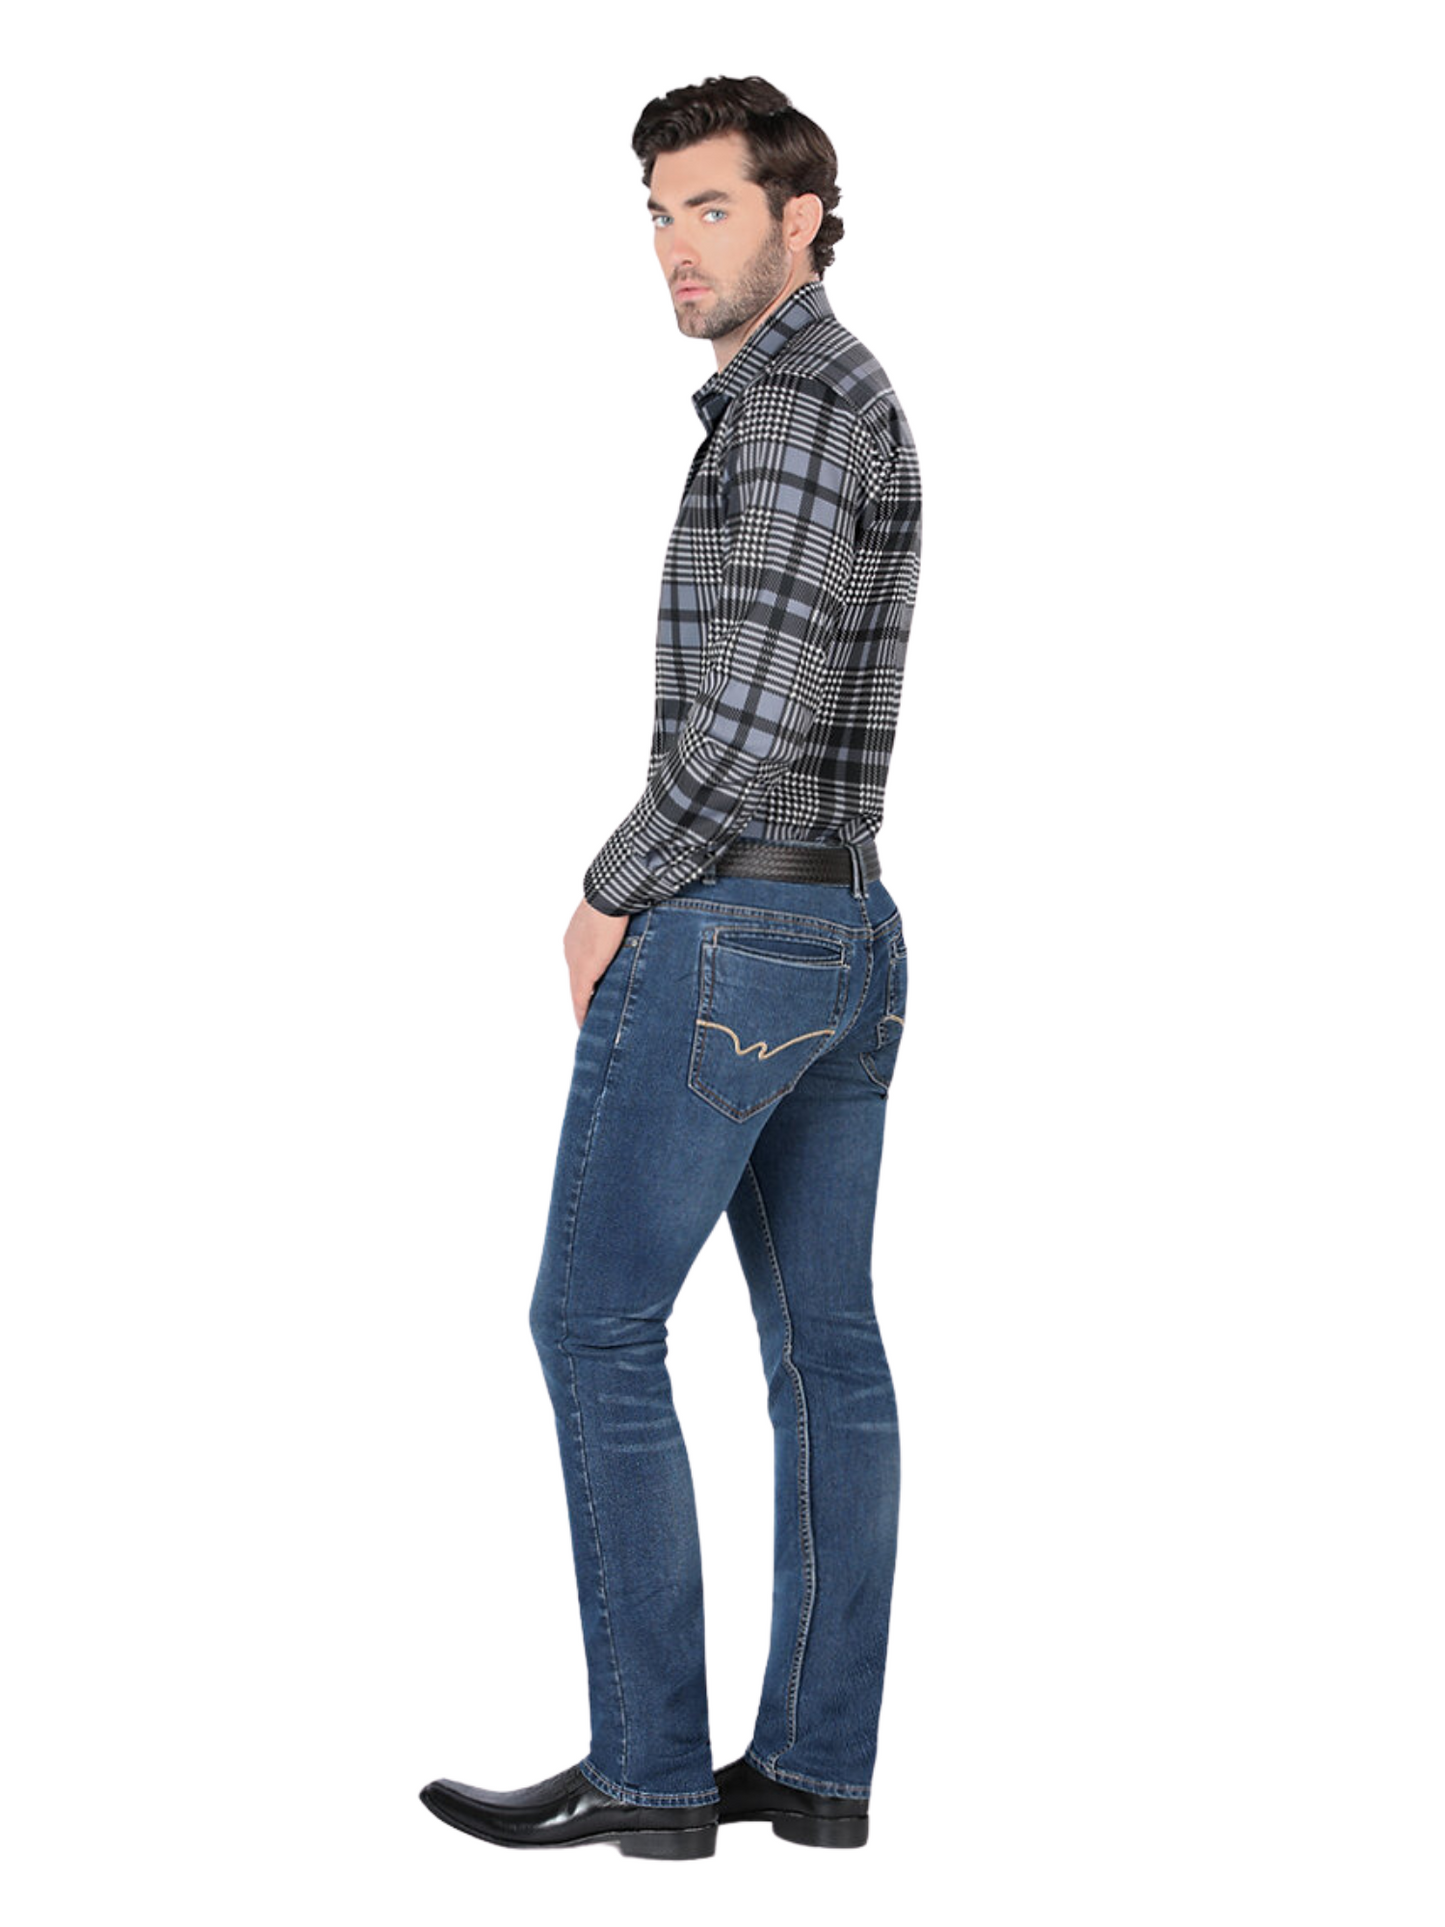 Pantalon Vaquero de Mezclilla Stretch para Hombre 'Montero' - ID: 5311 Pantalones de Vaquero Montero 